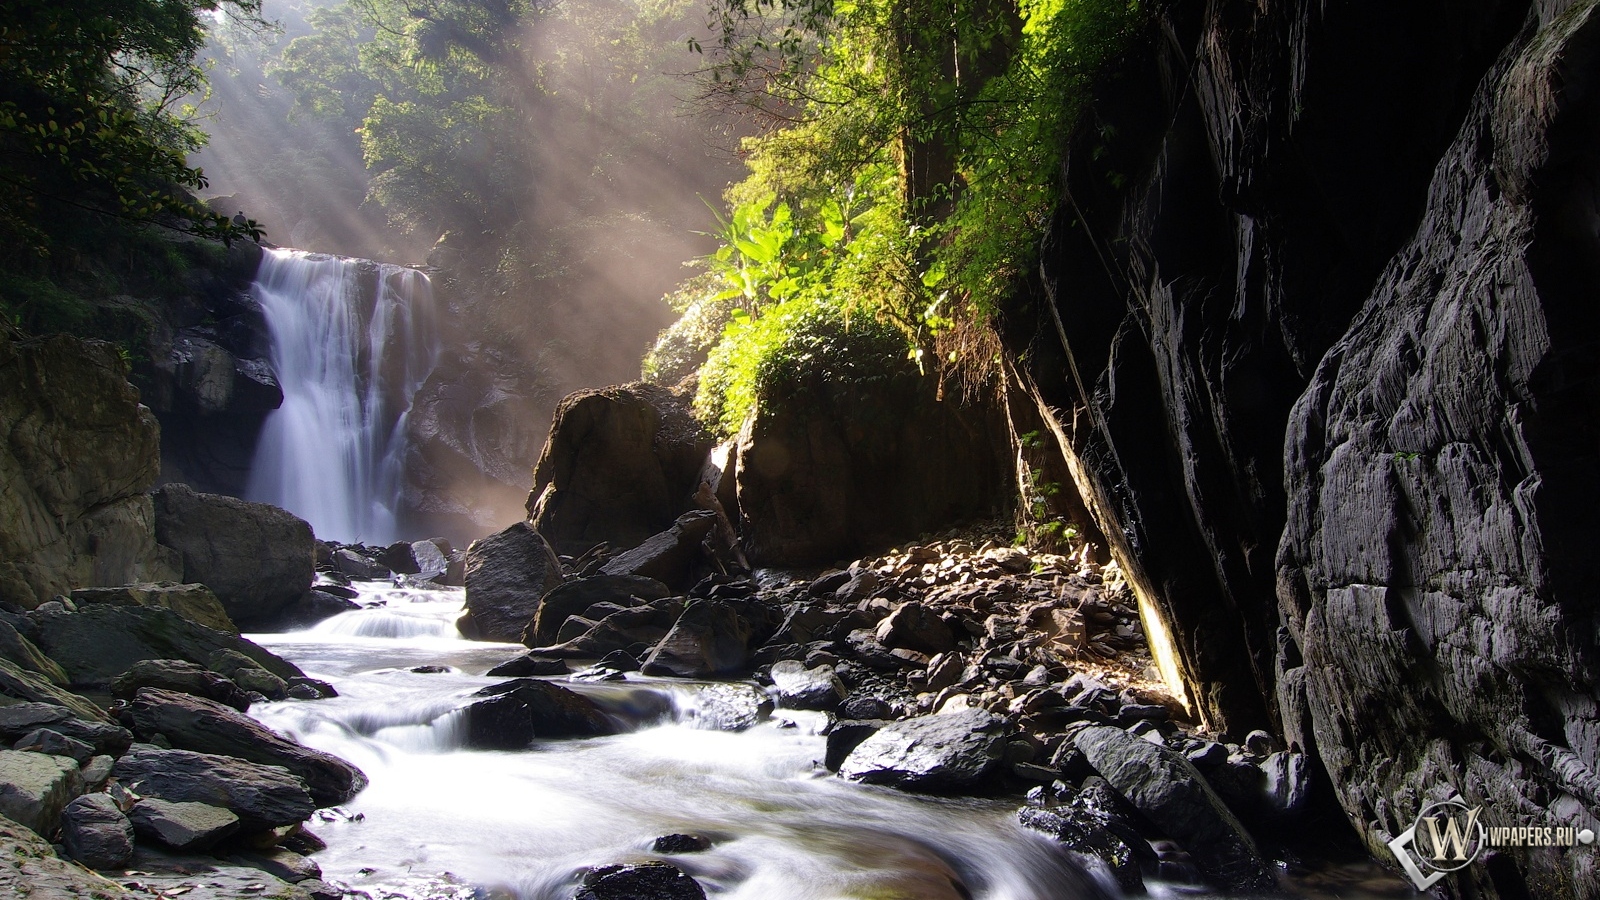 Neidong waterfall 1600x900